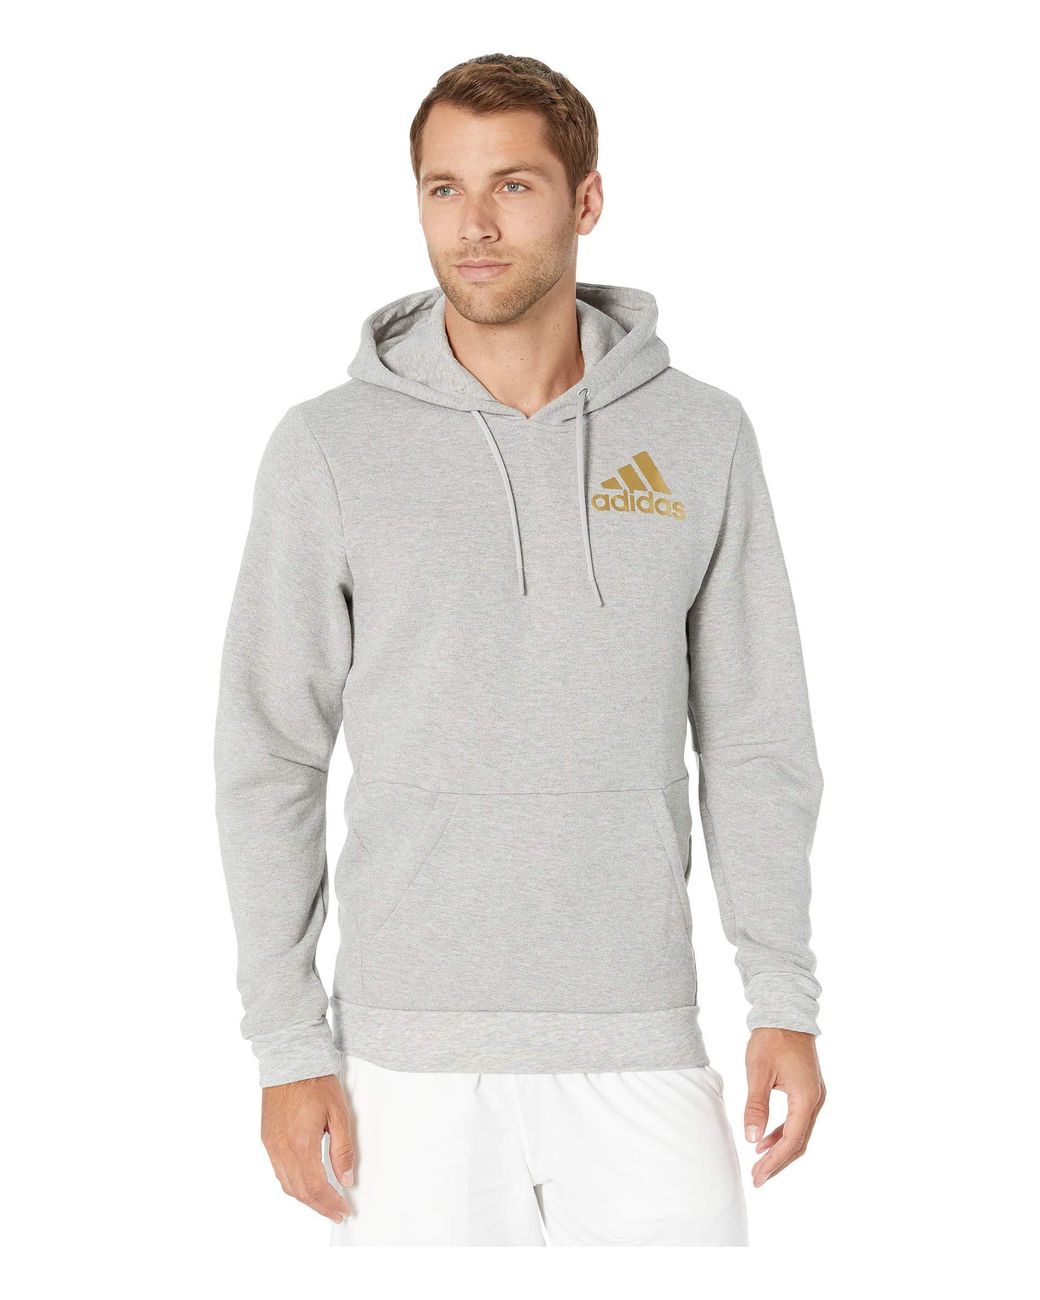 adidas Fleece Sport Id Metallic Pullover Hoodie in Gray for Men - Lyst